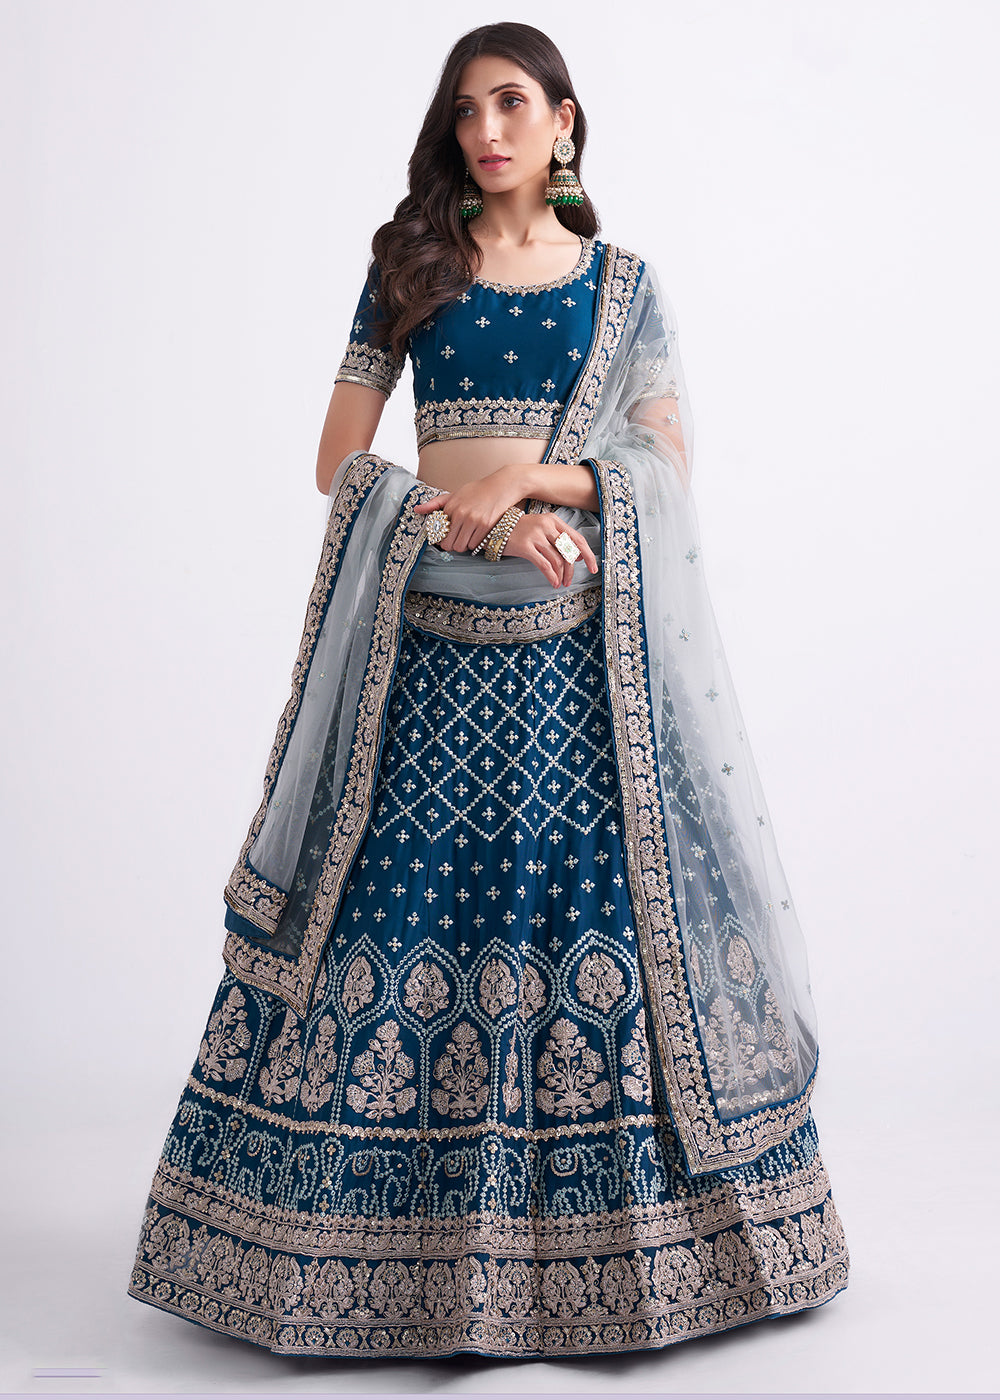 Buy Now Fabulous Teal Blue Wedding Style Designer Bridal Lehenga Choli Online in Canada, UK, USA & Worldwide at Empress Clothing. 